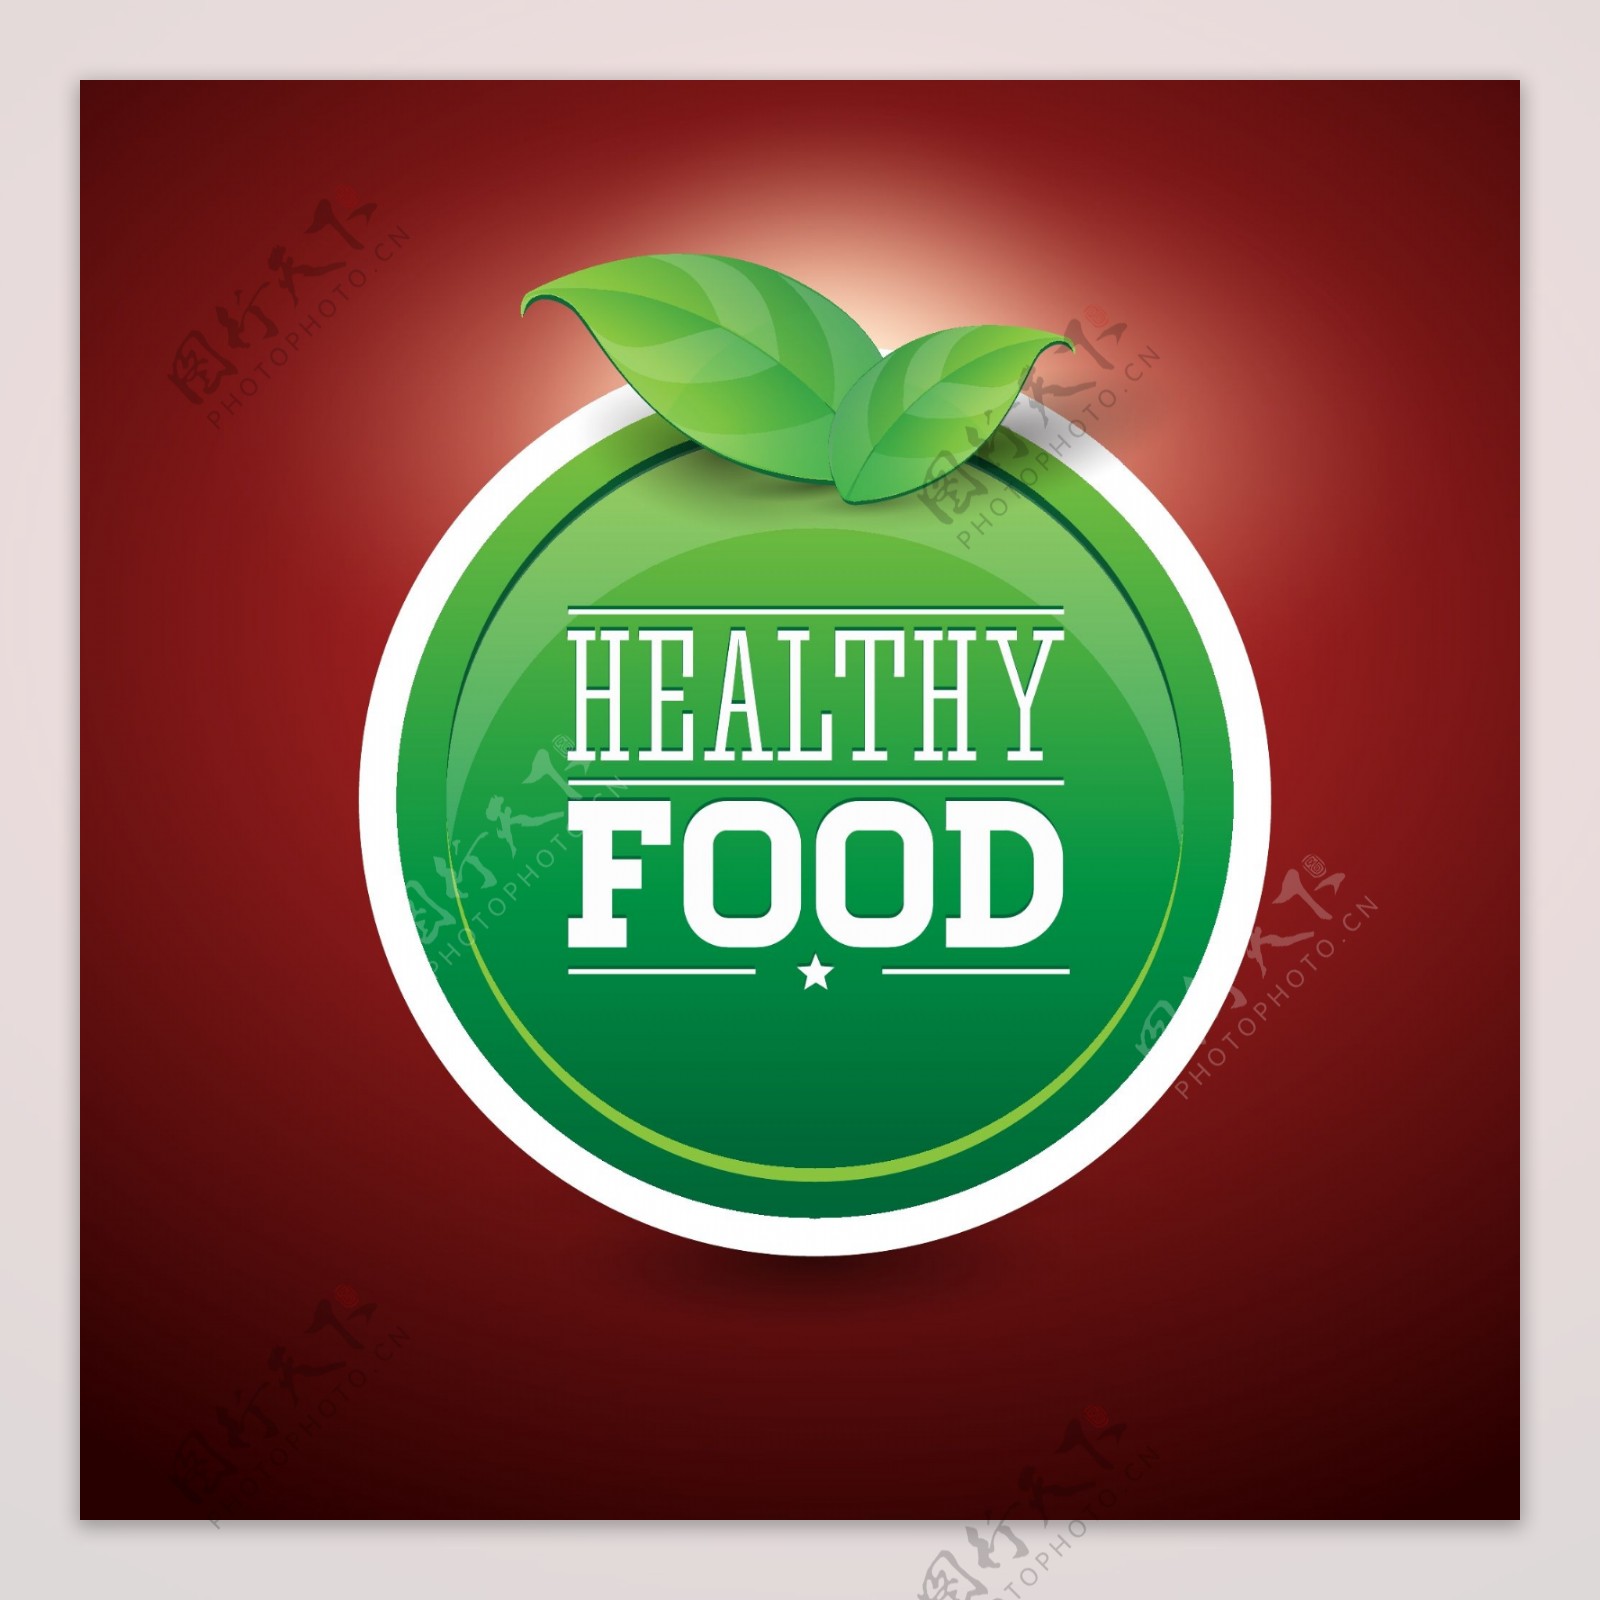 健康有机食品标签图片